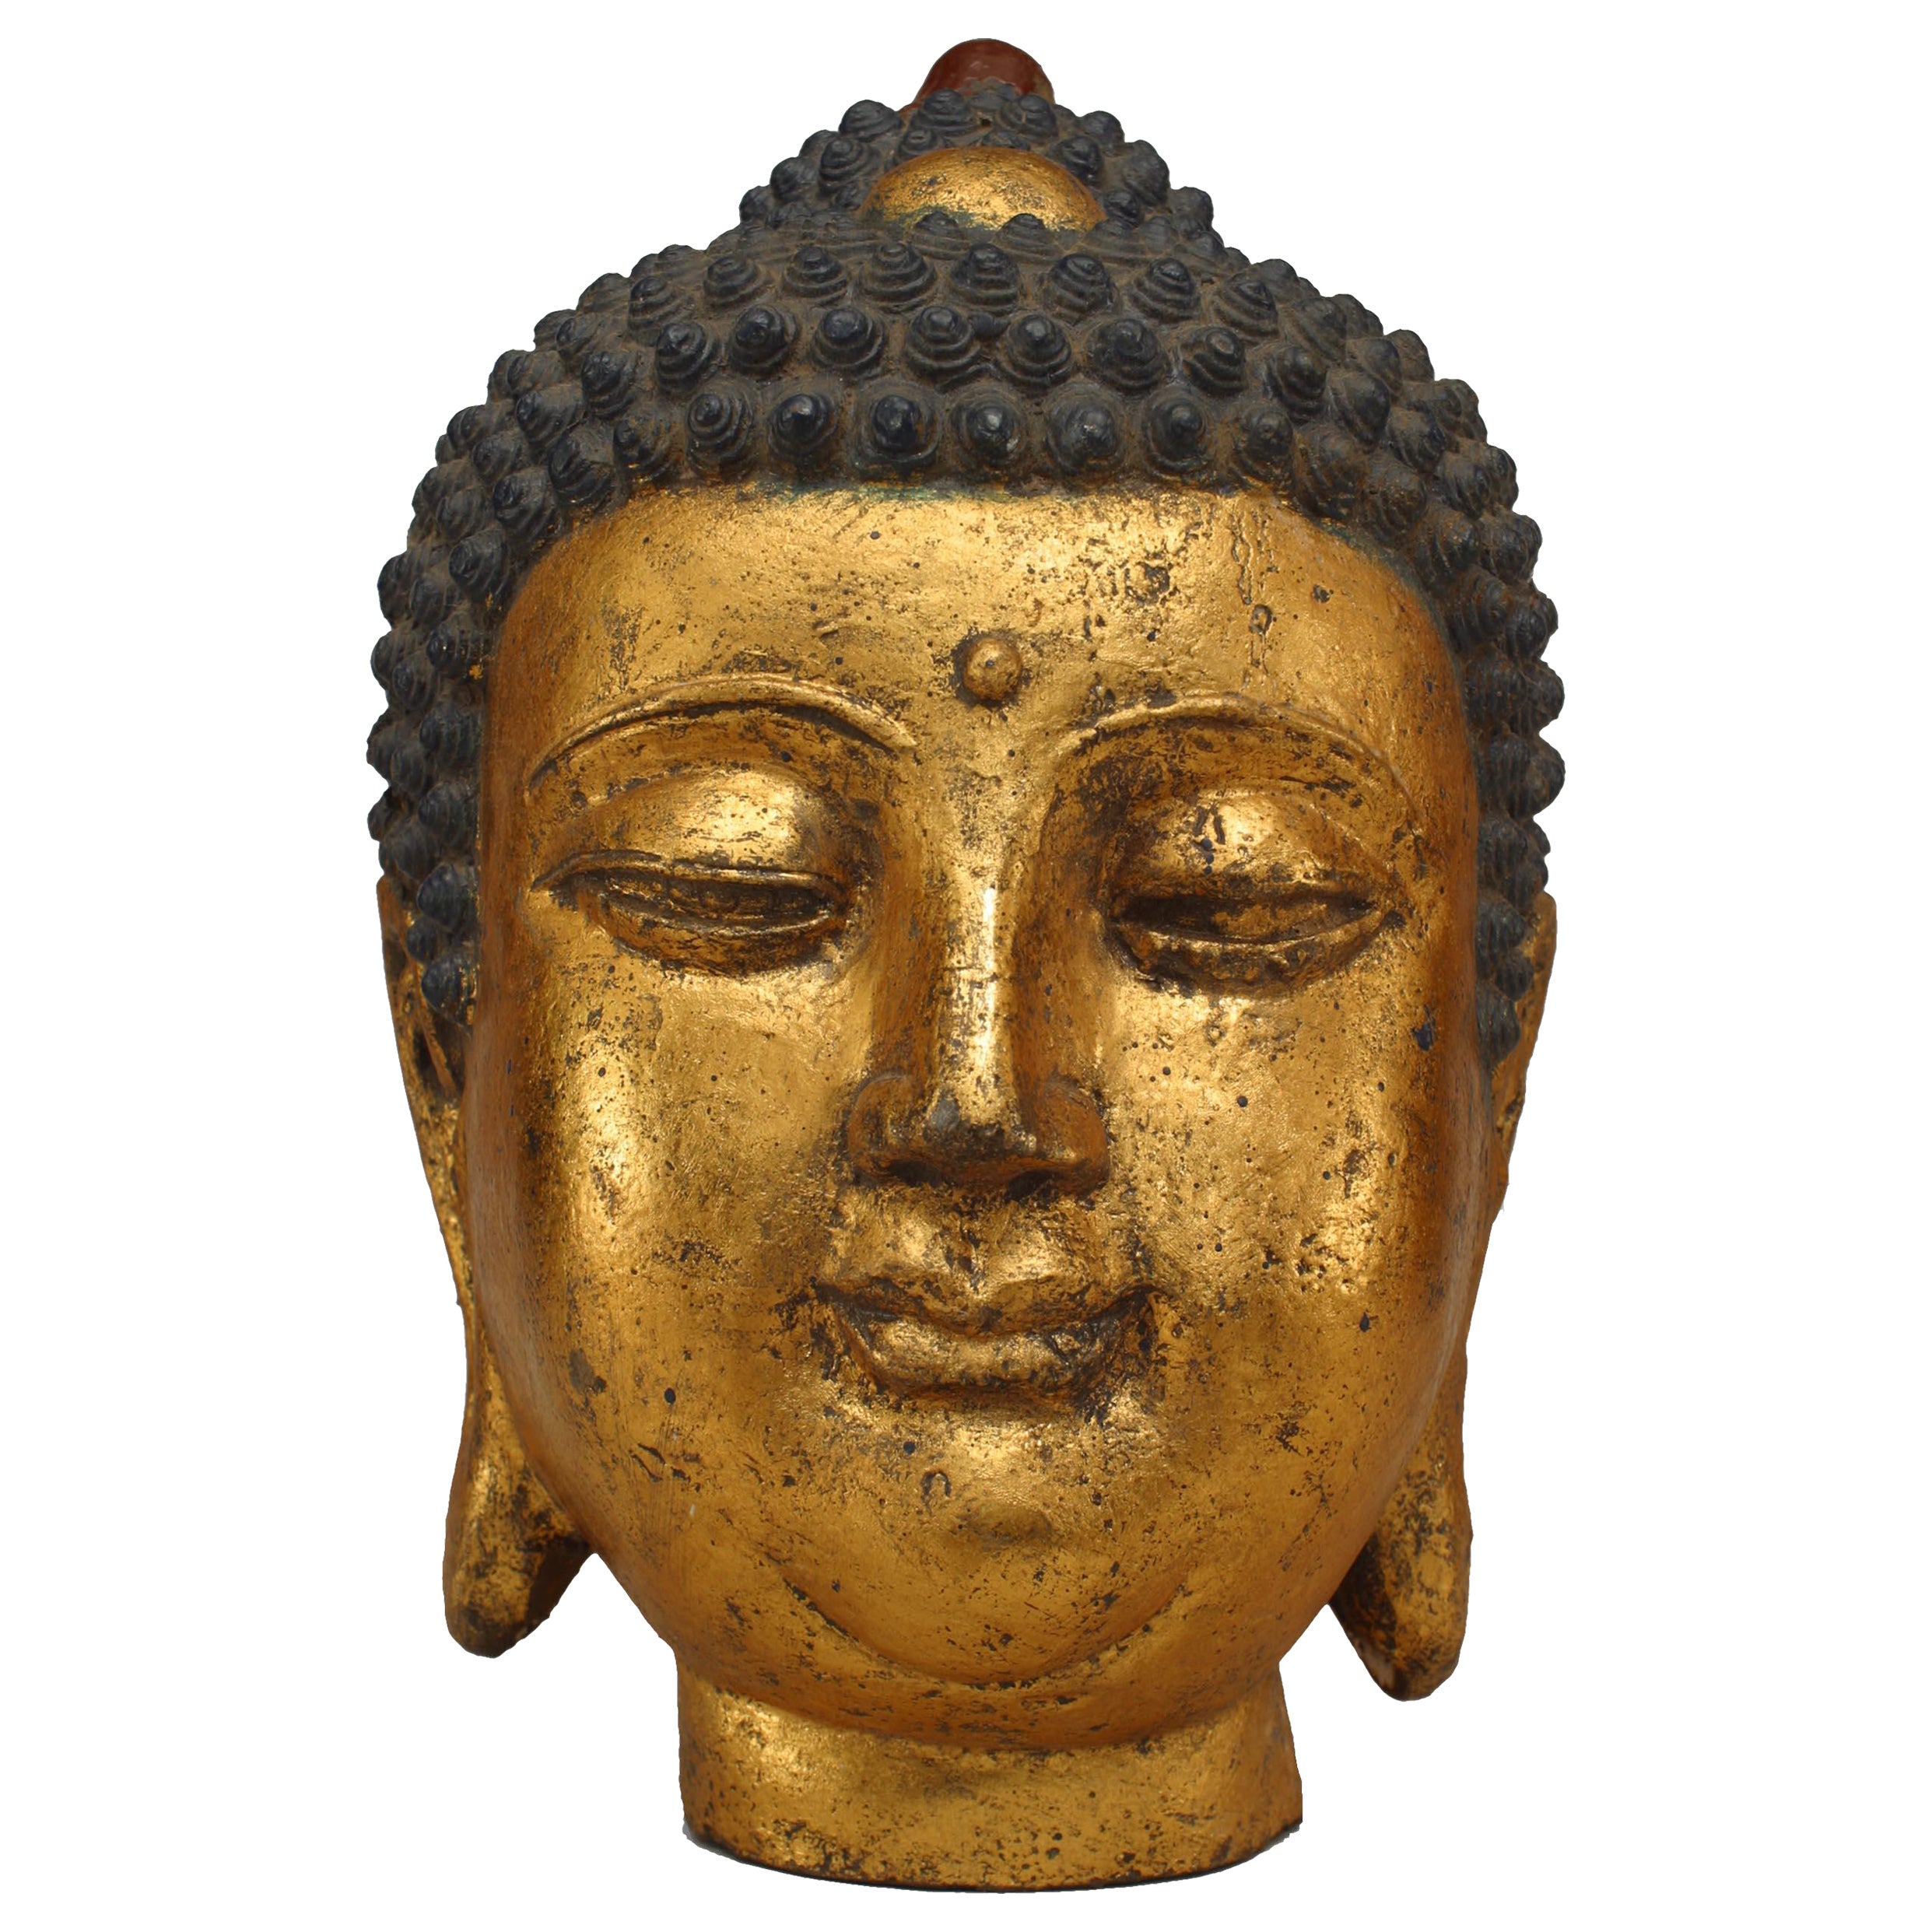 Chinesische Buddha-Büste aus Eisen und vergoldet